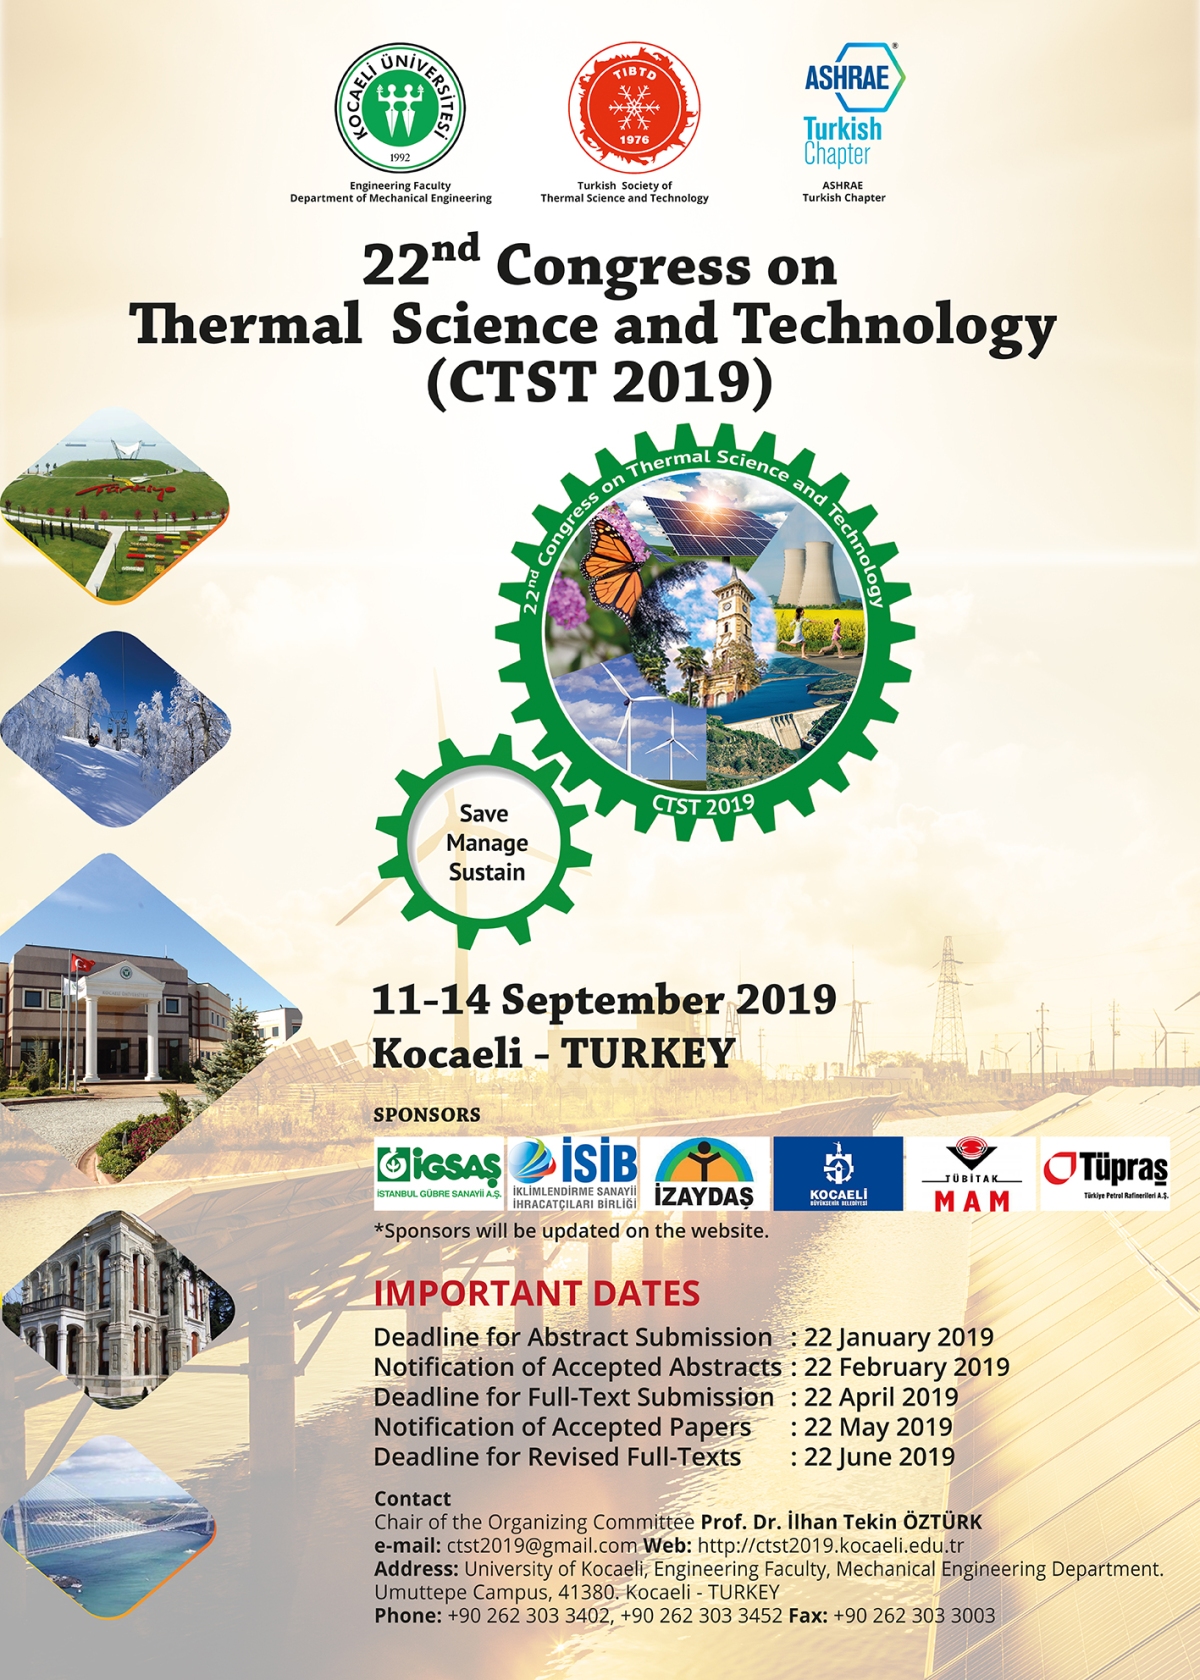 22. Isı Bilimi ve Tekniği Kongresi (CTST2019) 11-14 Eylül 2019 tarihinde, Uluslararası düzeyde Kocaeli Üniversitesi, Türk Isı Bilimi ve Tekniği Derneği (TIBTD) ve ASHRAE Turkish Chapter iş birliği ile düzenlenecektir.